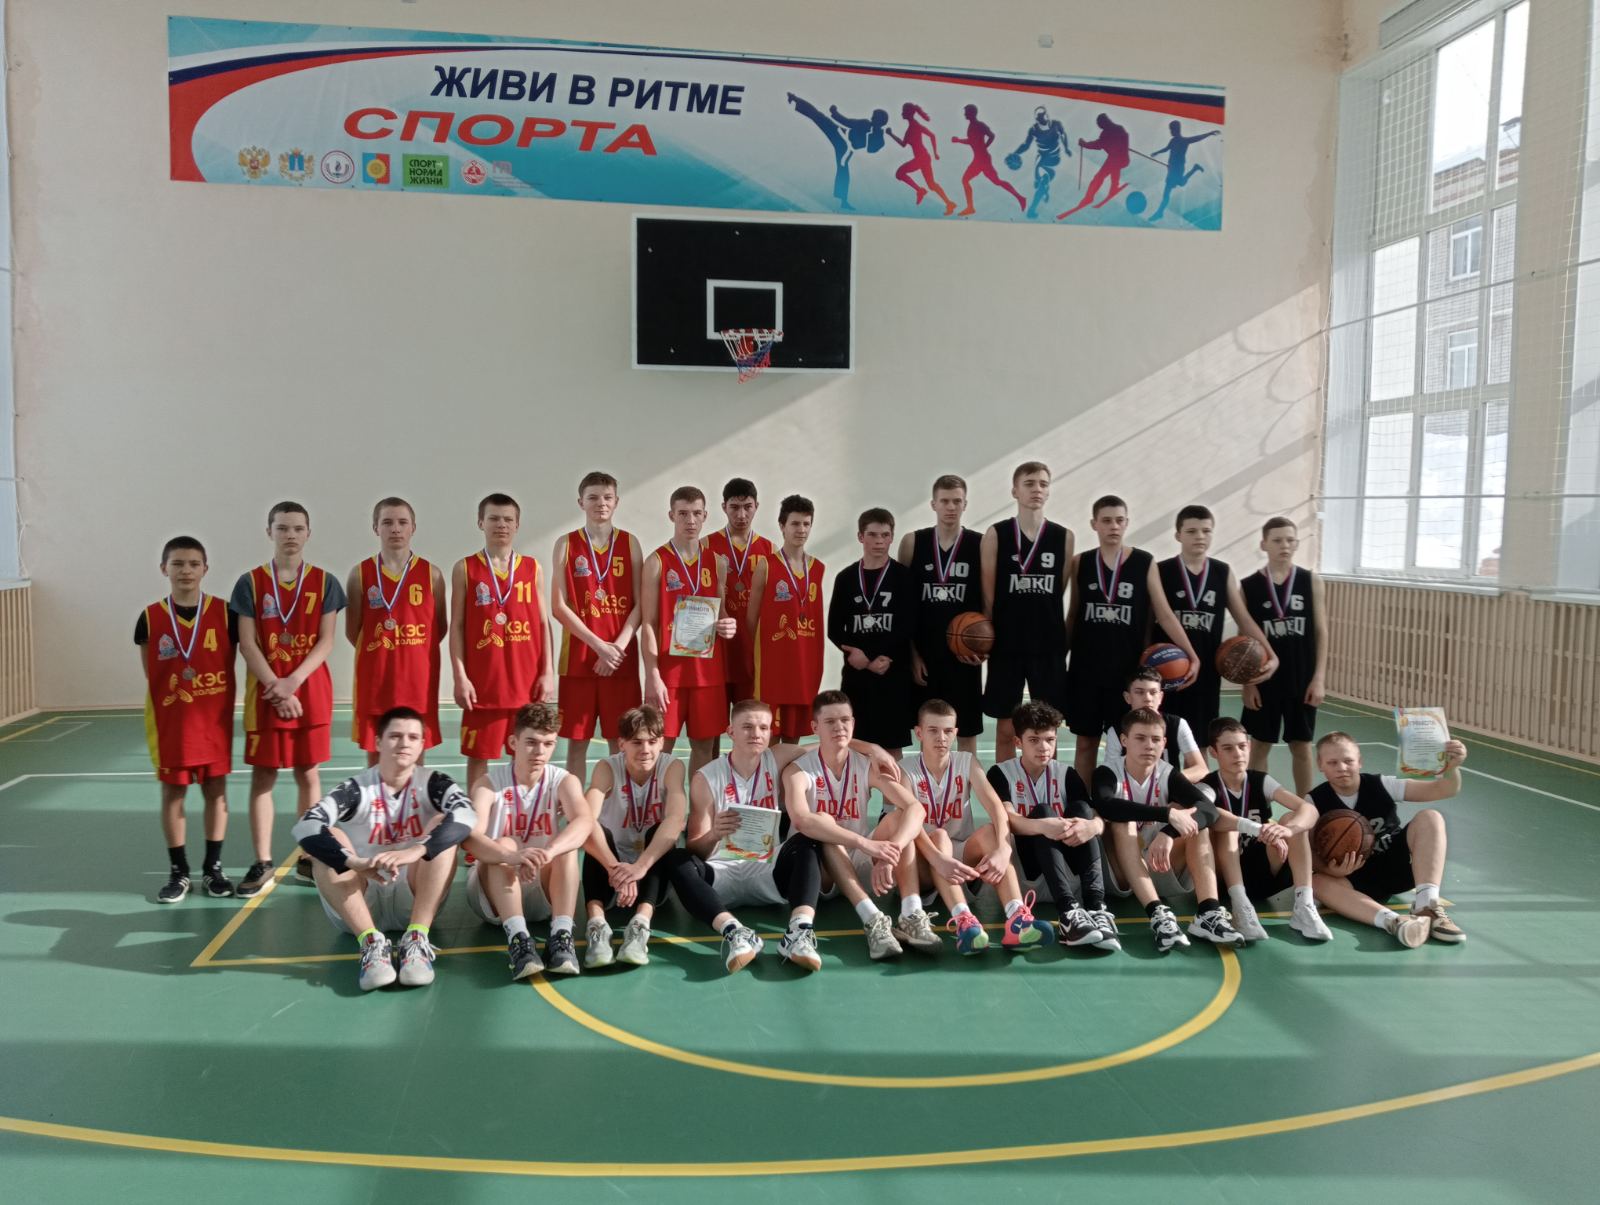 Районные соревнования по баскетболу (юноши).